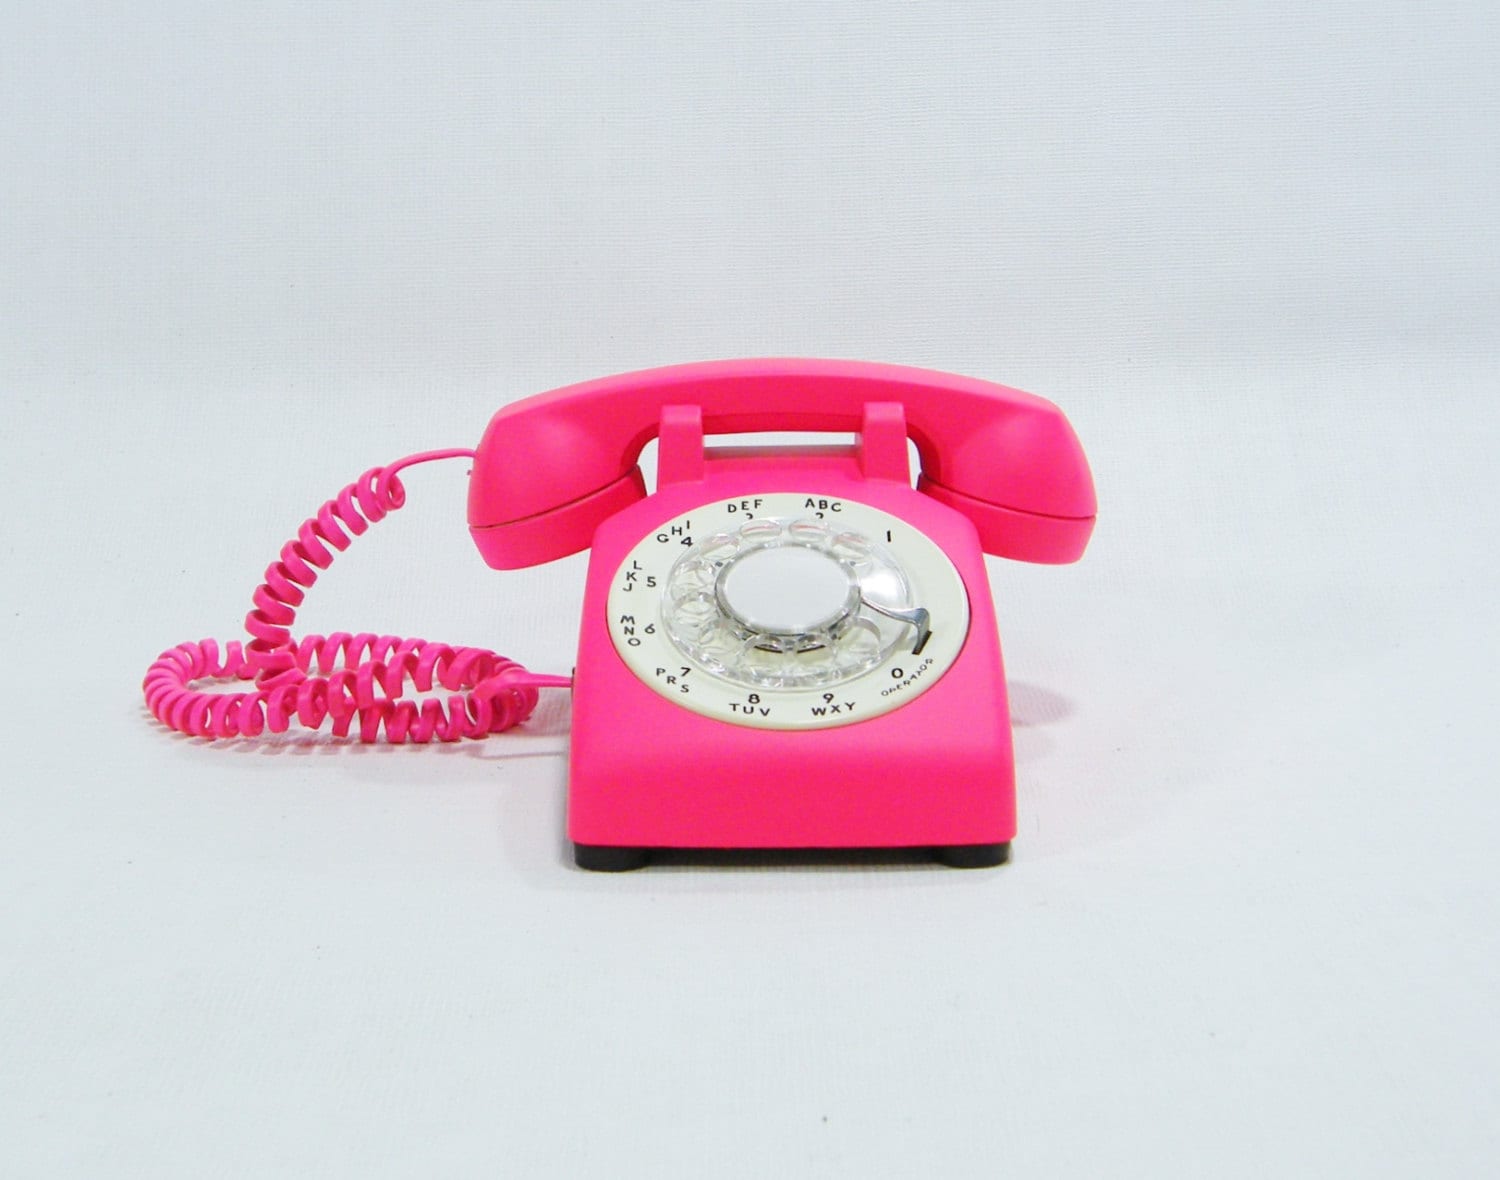 Купить розовый телефон. Розовый телефон. Розовая телефонная трубка. Старая телефонная трубка розовая. Домашний телефон розовый.